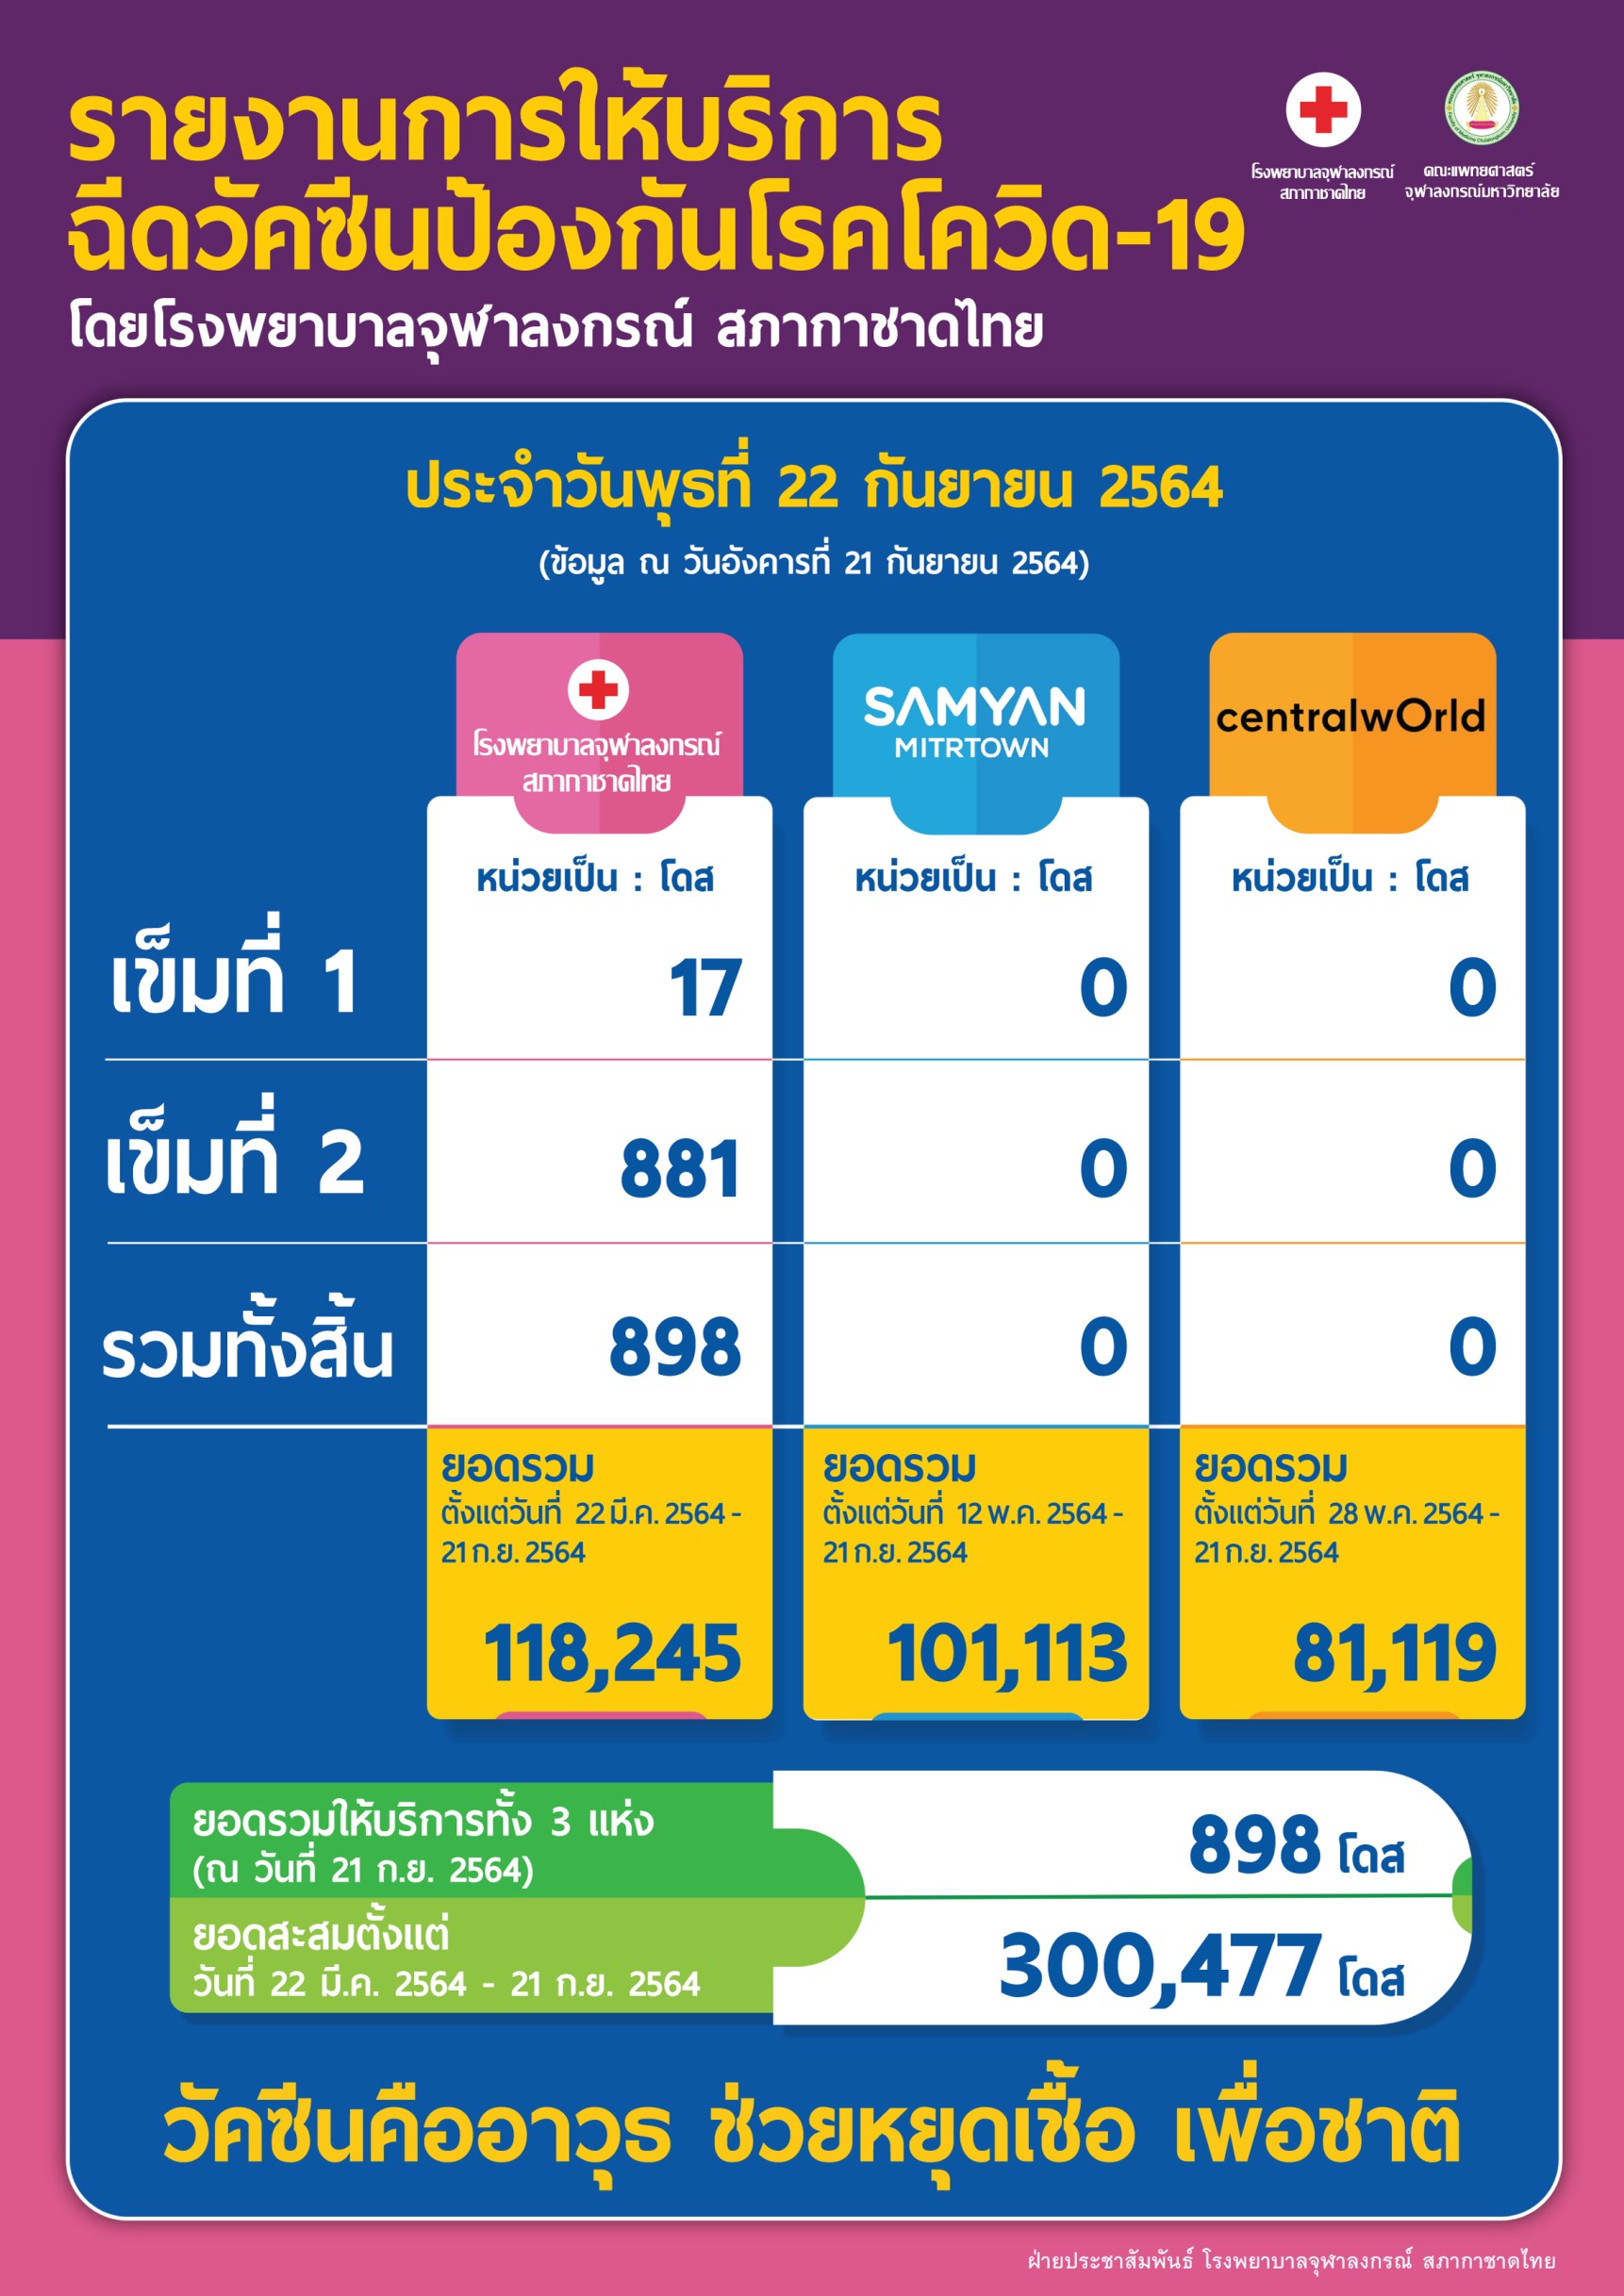 รายงานการให้บริการฉีดวัคซีนป้องกันโรคโควิด-19 โดยโรงพยาบาลจุฬาลงกรณ์ สภากาชาดไทยประจำวันพุธที่ 22 กันยายน 2564